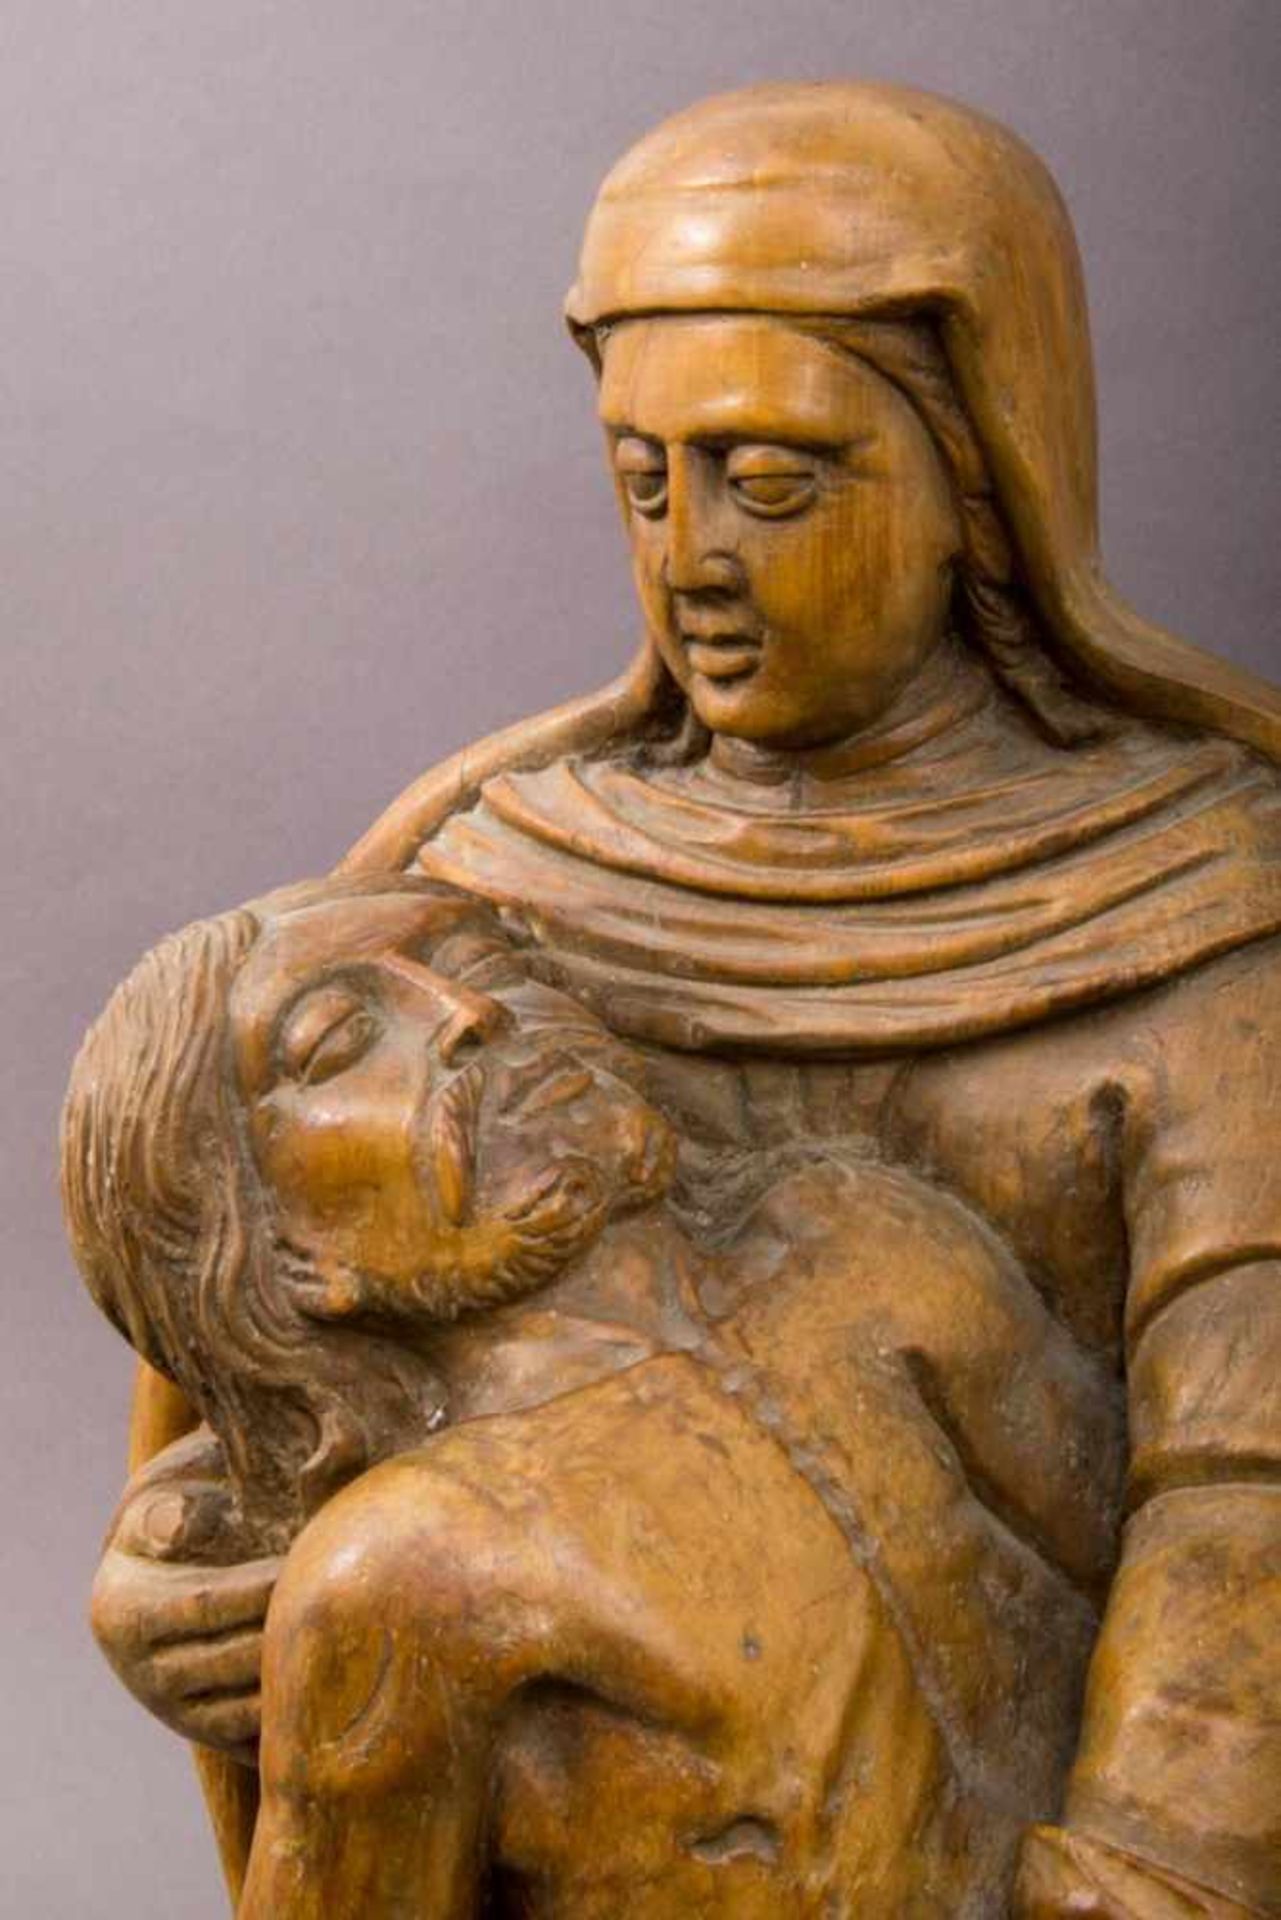 Antika Pieta, Darstellung der Maria als Schmerzensmutter (Mater Dolorosa) mit dem toten Jesus - Bild 3 aus 9